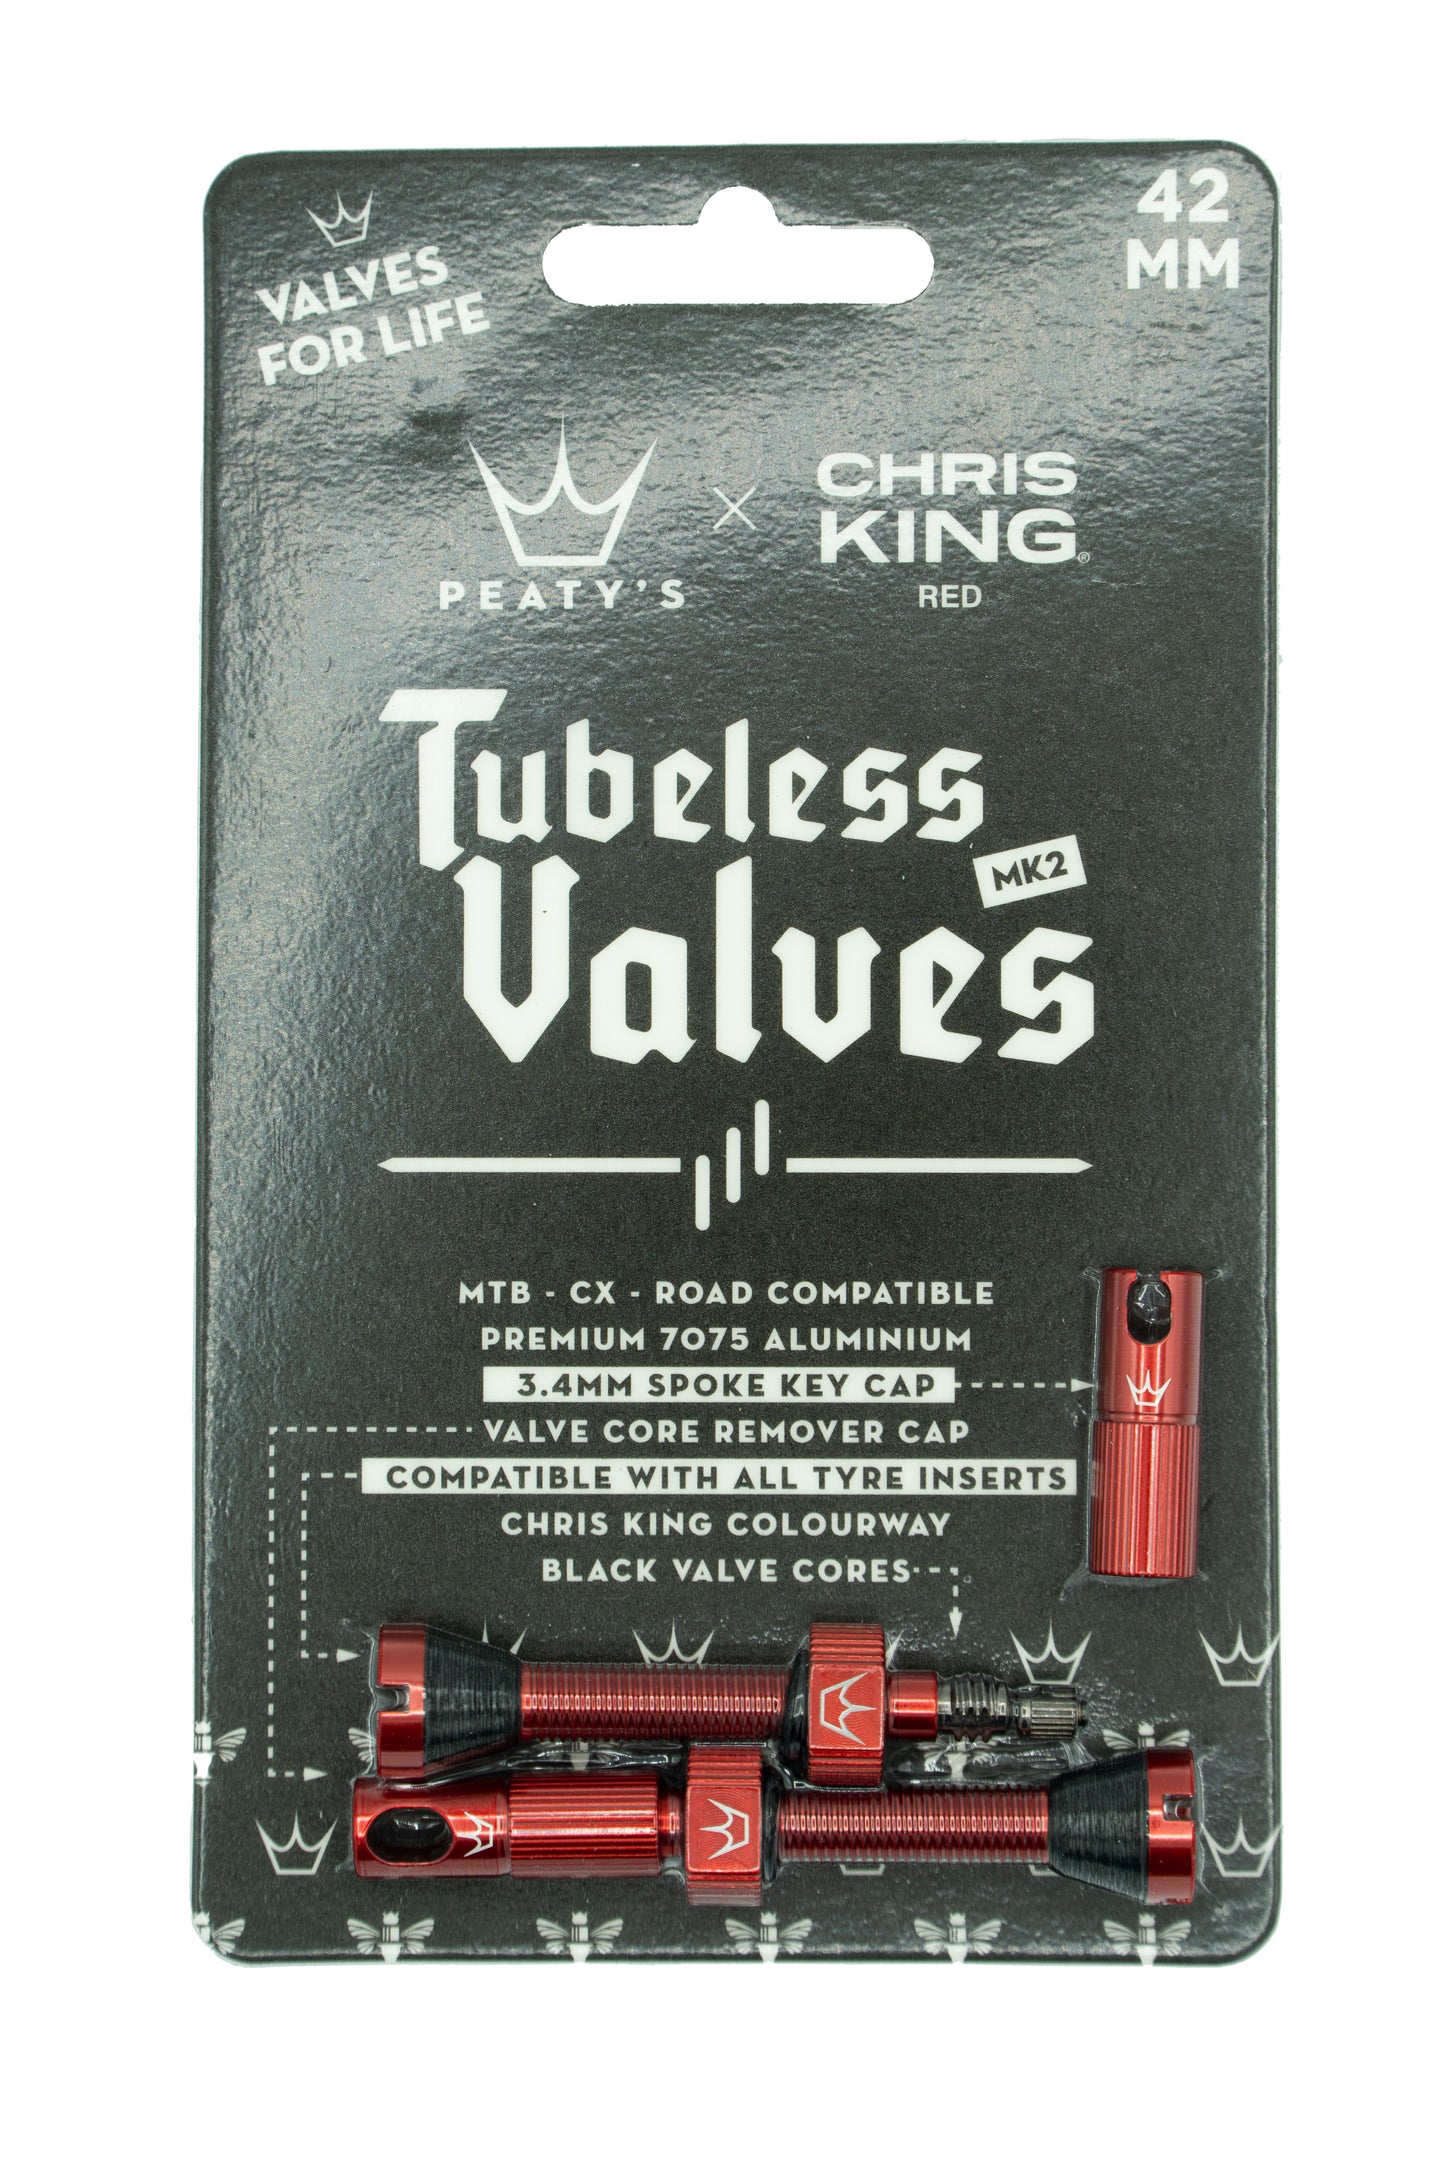 Peaty's Chris King Tubeless valves MK2 Red - 42mm